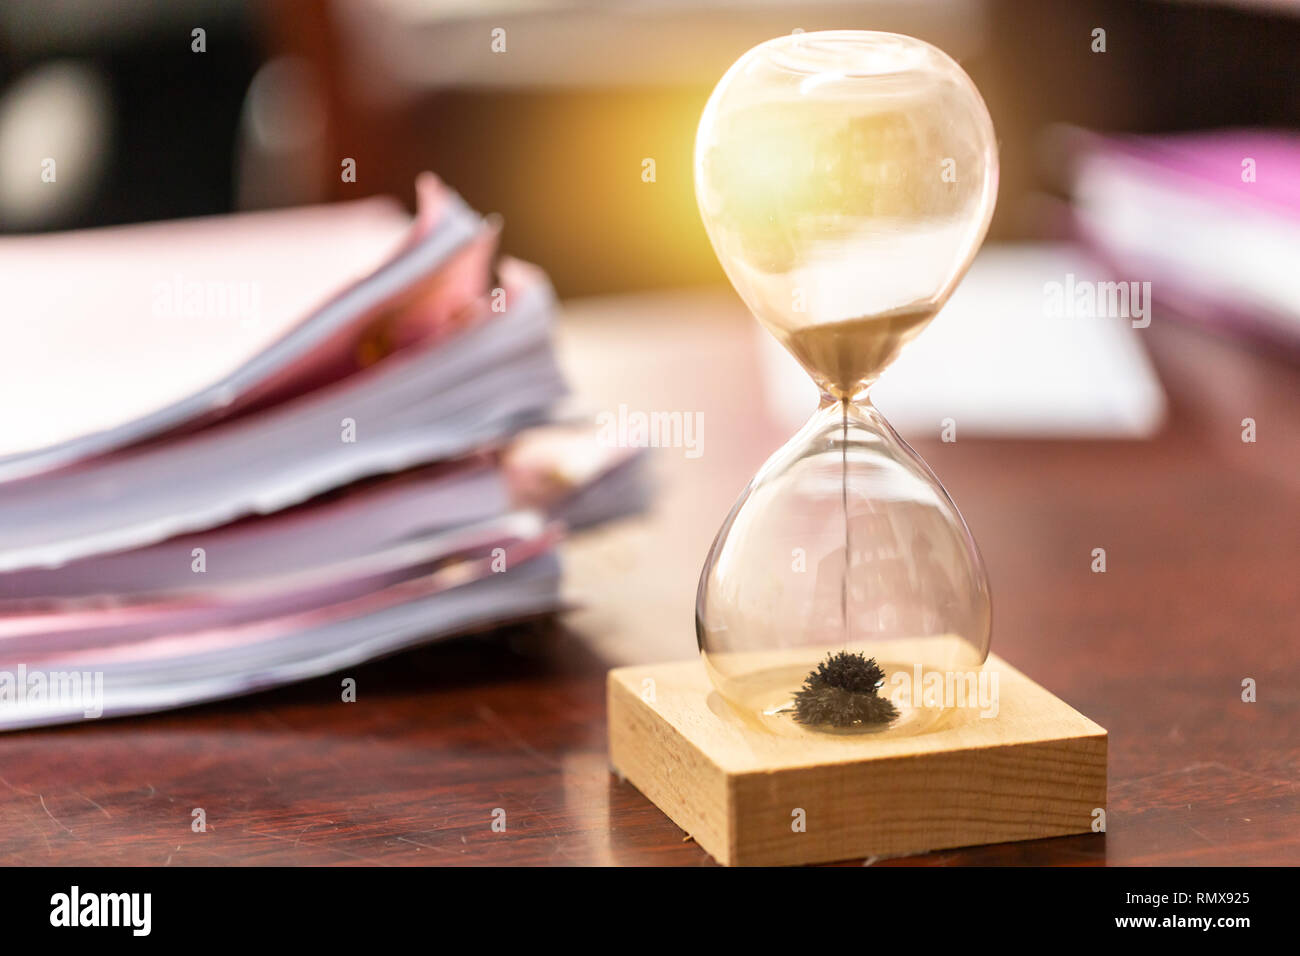 Emploi entreprise travaillant avec le temps restant pour hourglass concept de travail. Banque D'Images